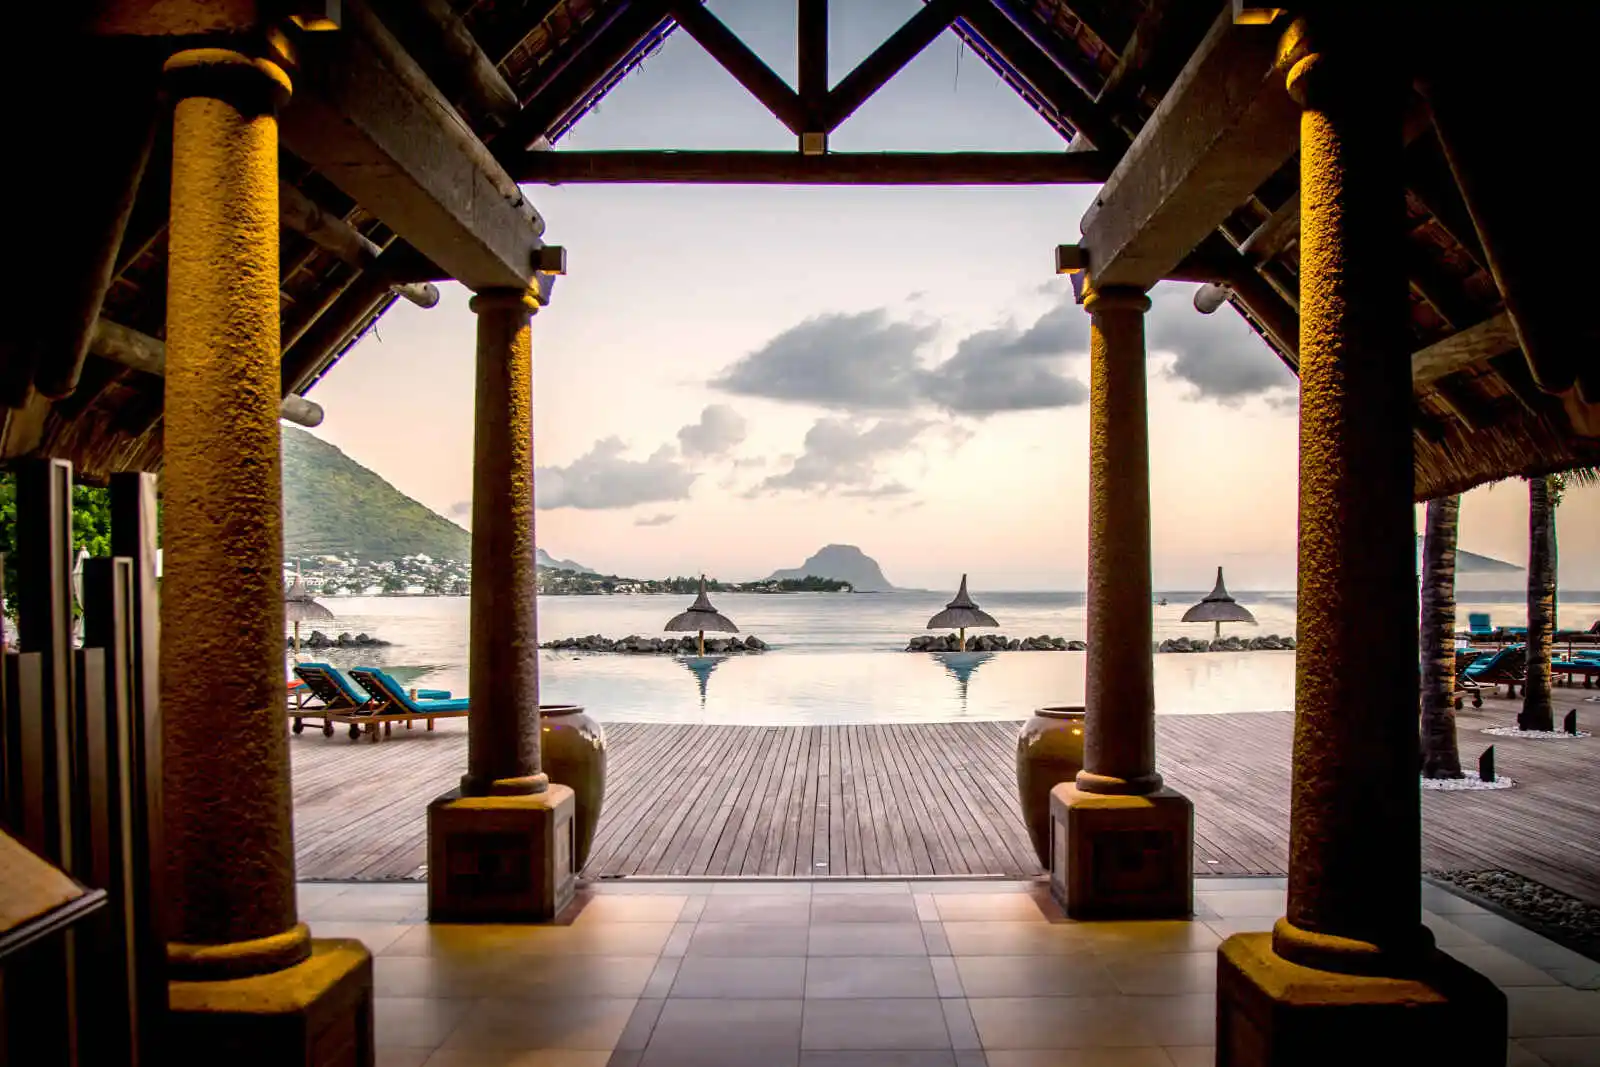 Lobby avec vue sur la piscine de l'hôtel, hôtel Sands Suites Resort & Spa